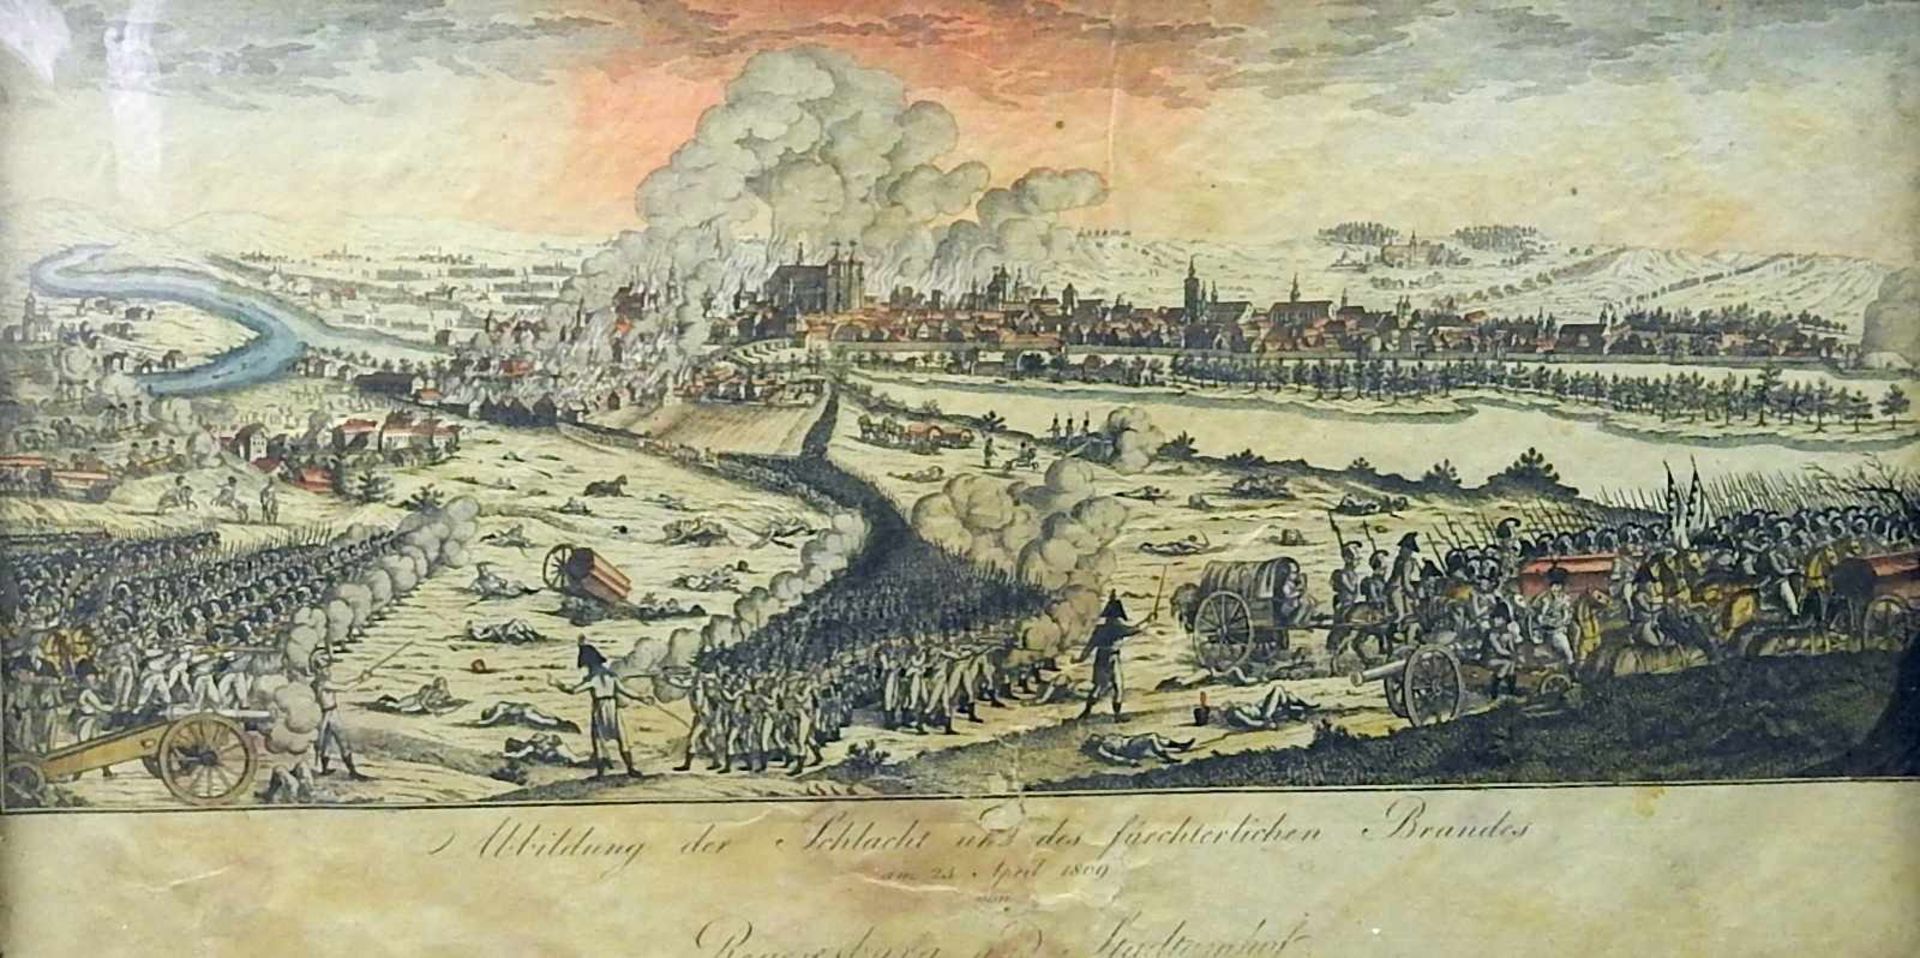 Regensburg und Stadtamhof in FlammenKolorierter Kupferstich/Papier. Abbildung der Schlacht und des